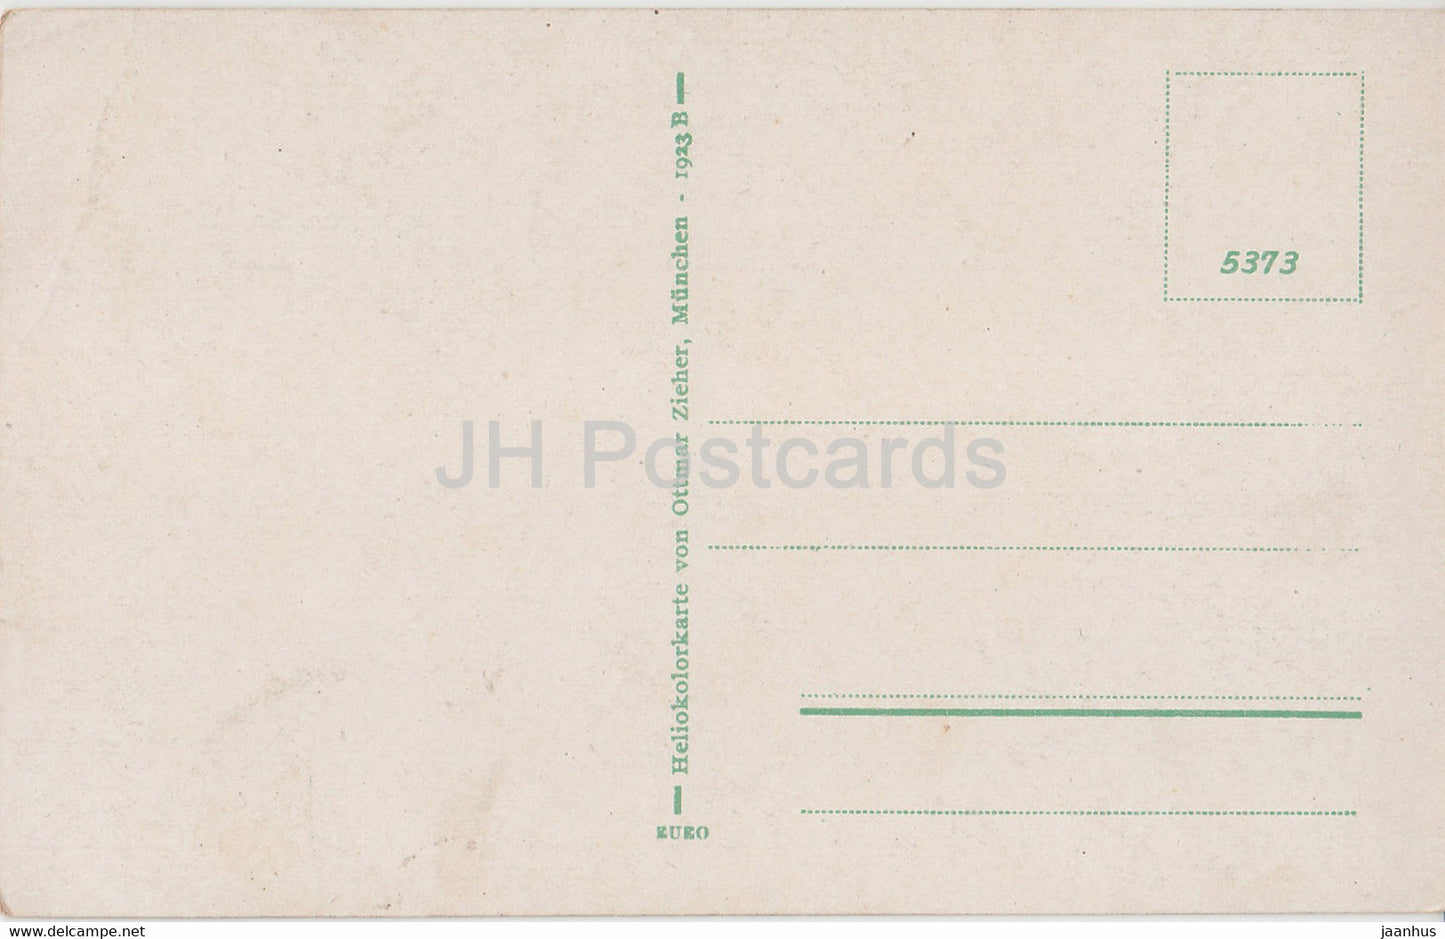 Burg Eltz - 5373 - old postcard - Germany - unused